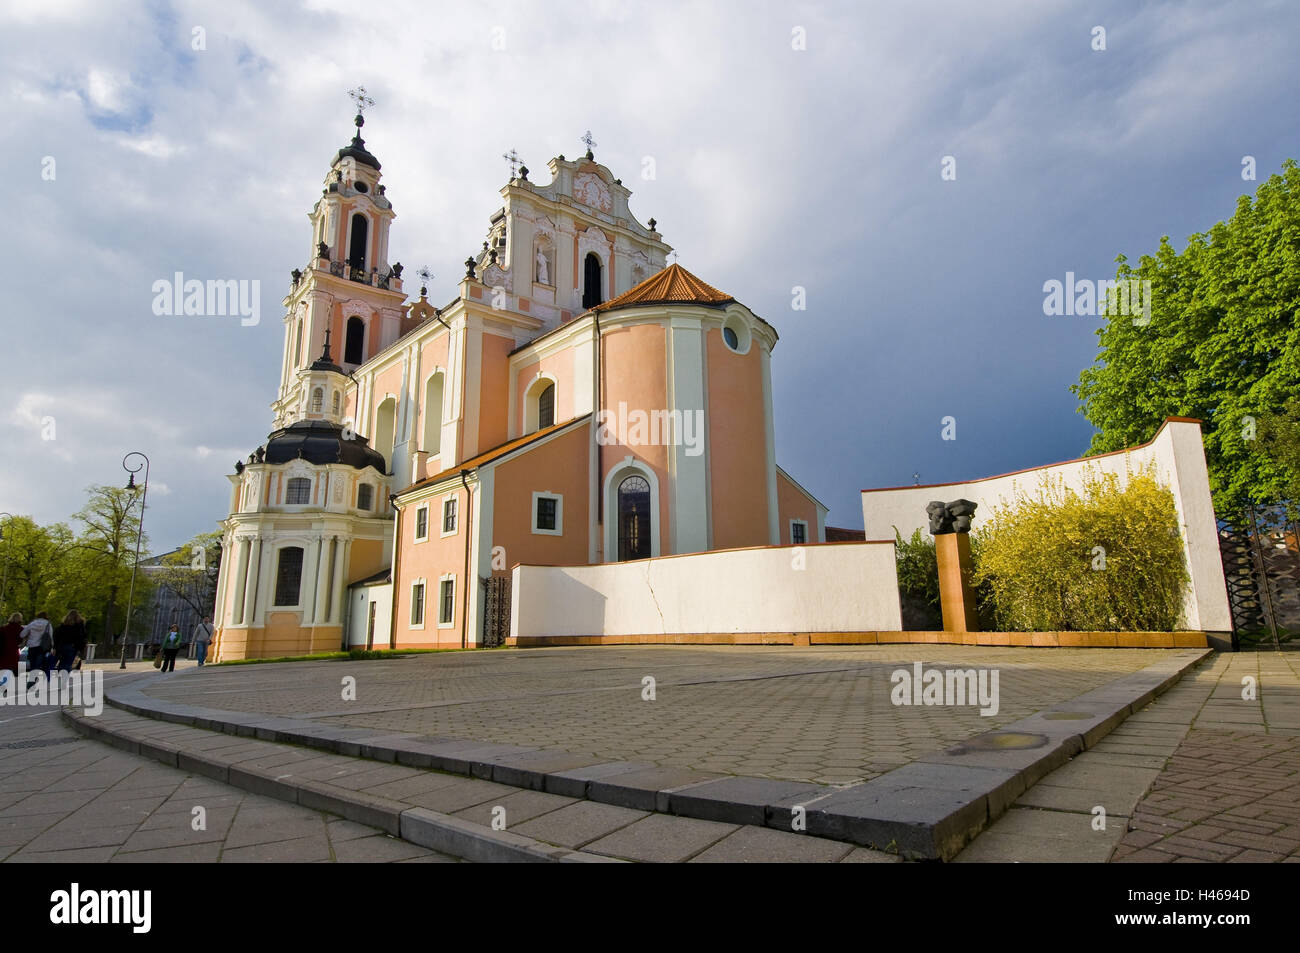 Lithuania, Vilnius, Old Town, Vilniaus Gatve, St. Katharinen church, Stock Photo